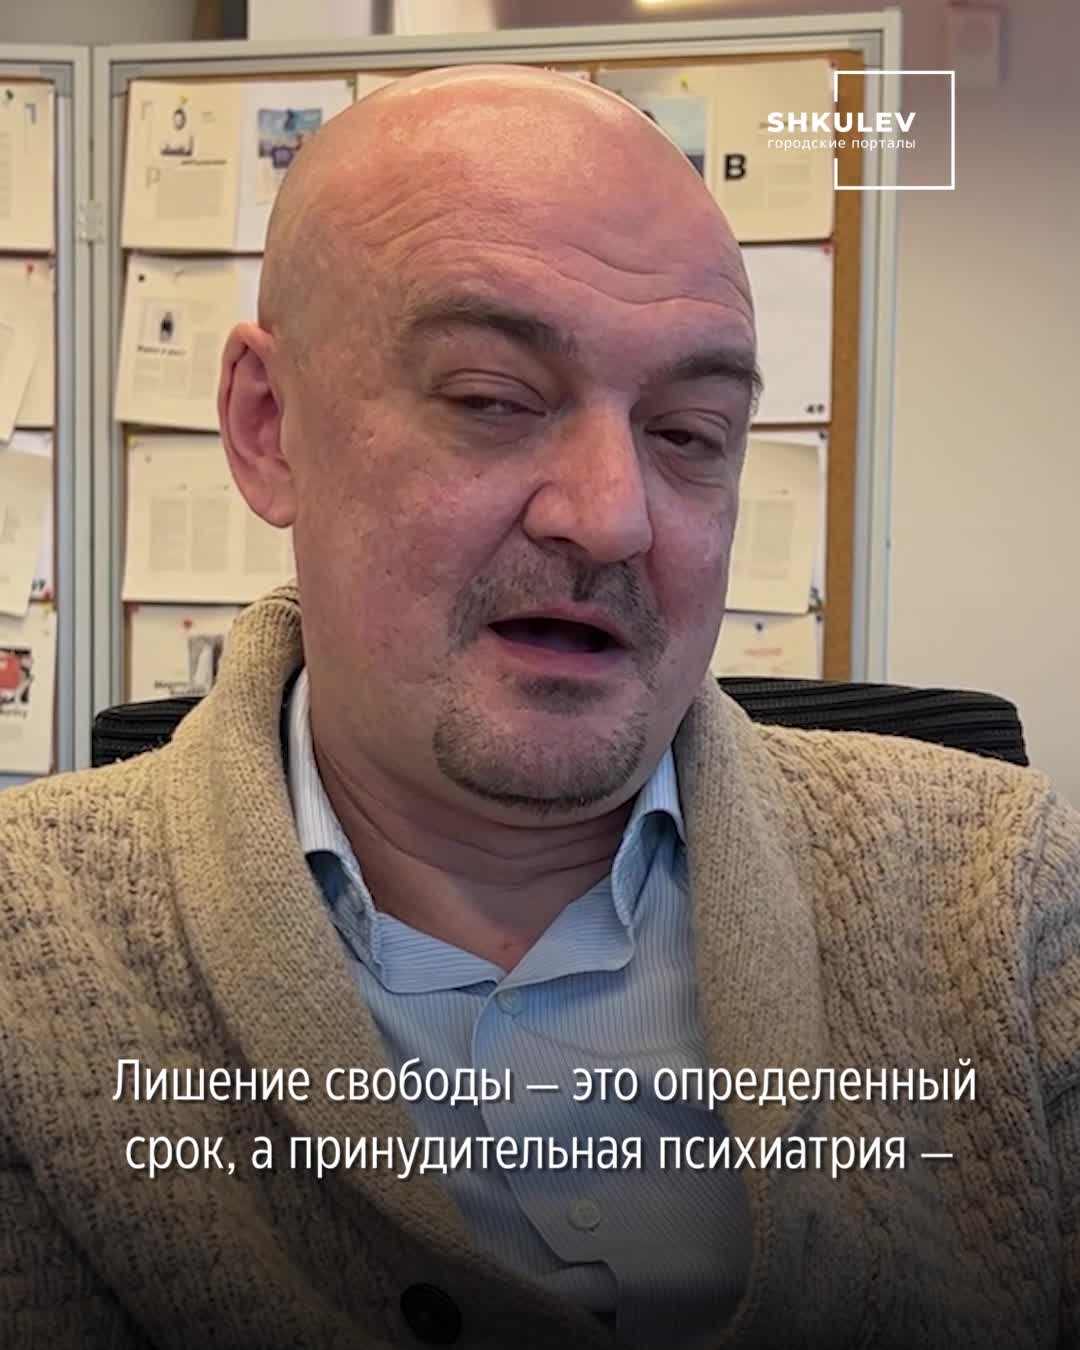 В Новосибирской области прокуратура раскрыла портрет типичного преступника